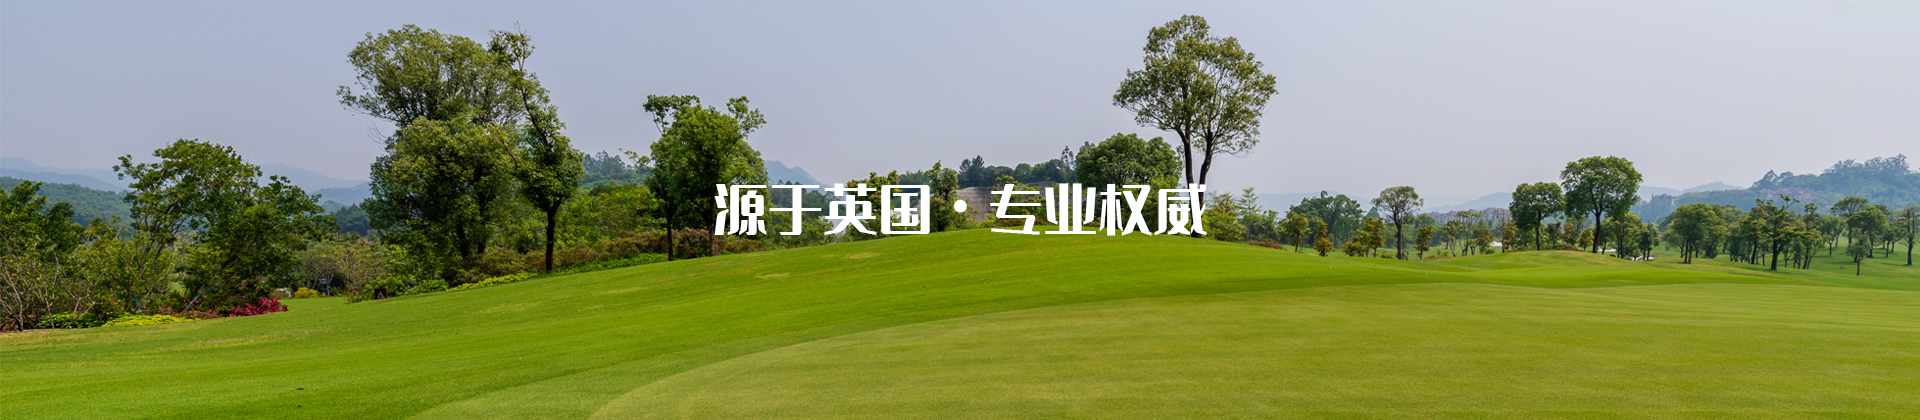 http://www.57-golf.com/data/upload/202106/20210601143101_120.jpg